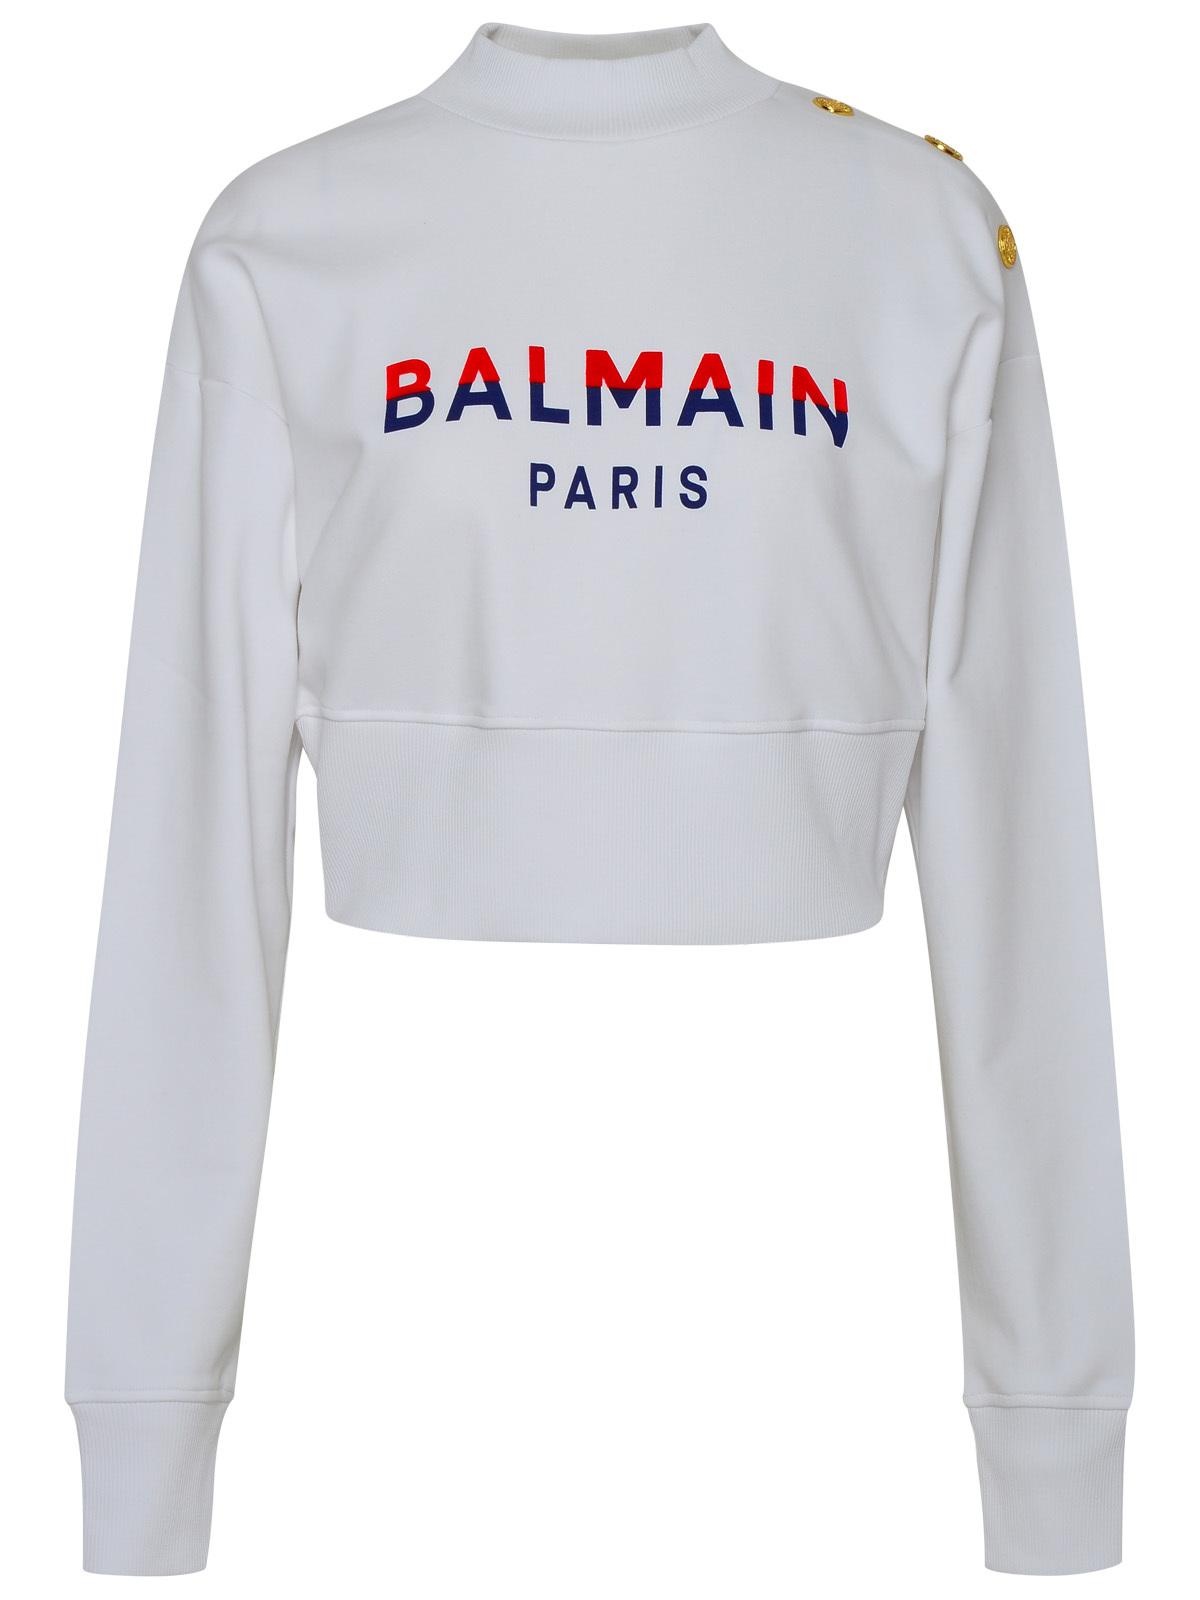 Balmain White Cotton Sweatshirt - 1